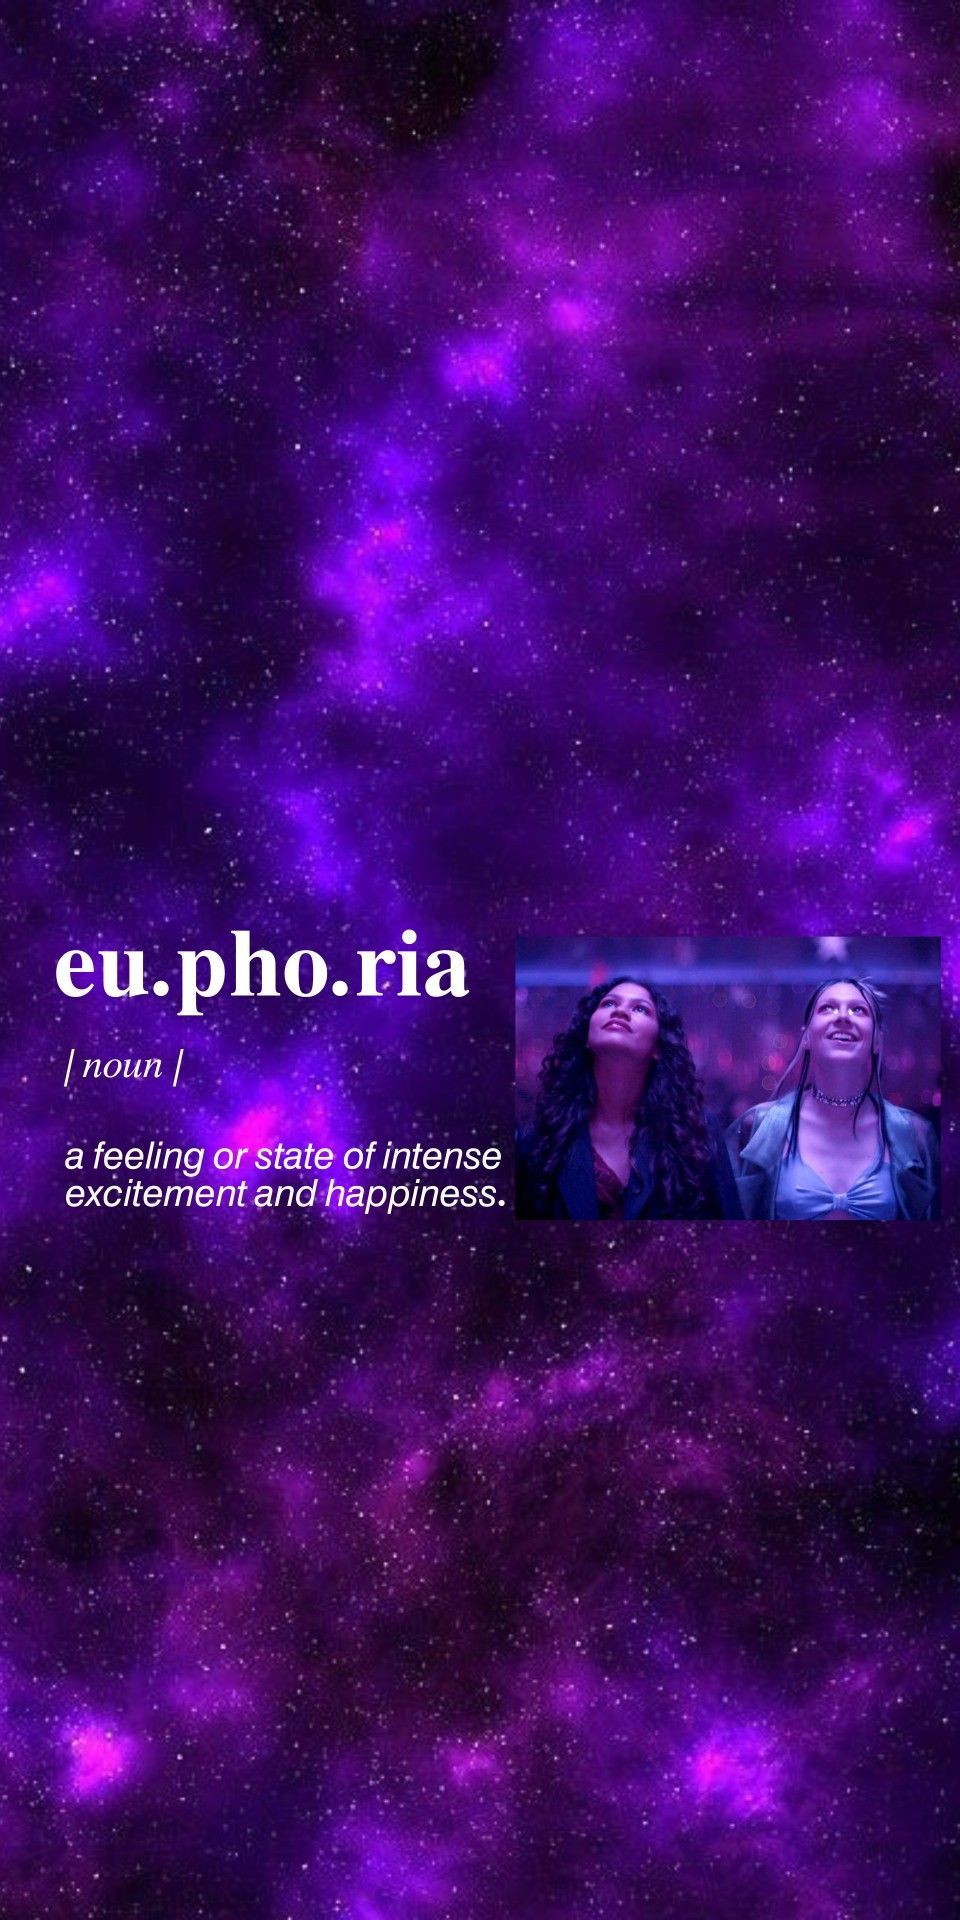 Euphoria Wallpaper. Euphoria, Hbo series, Hbo